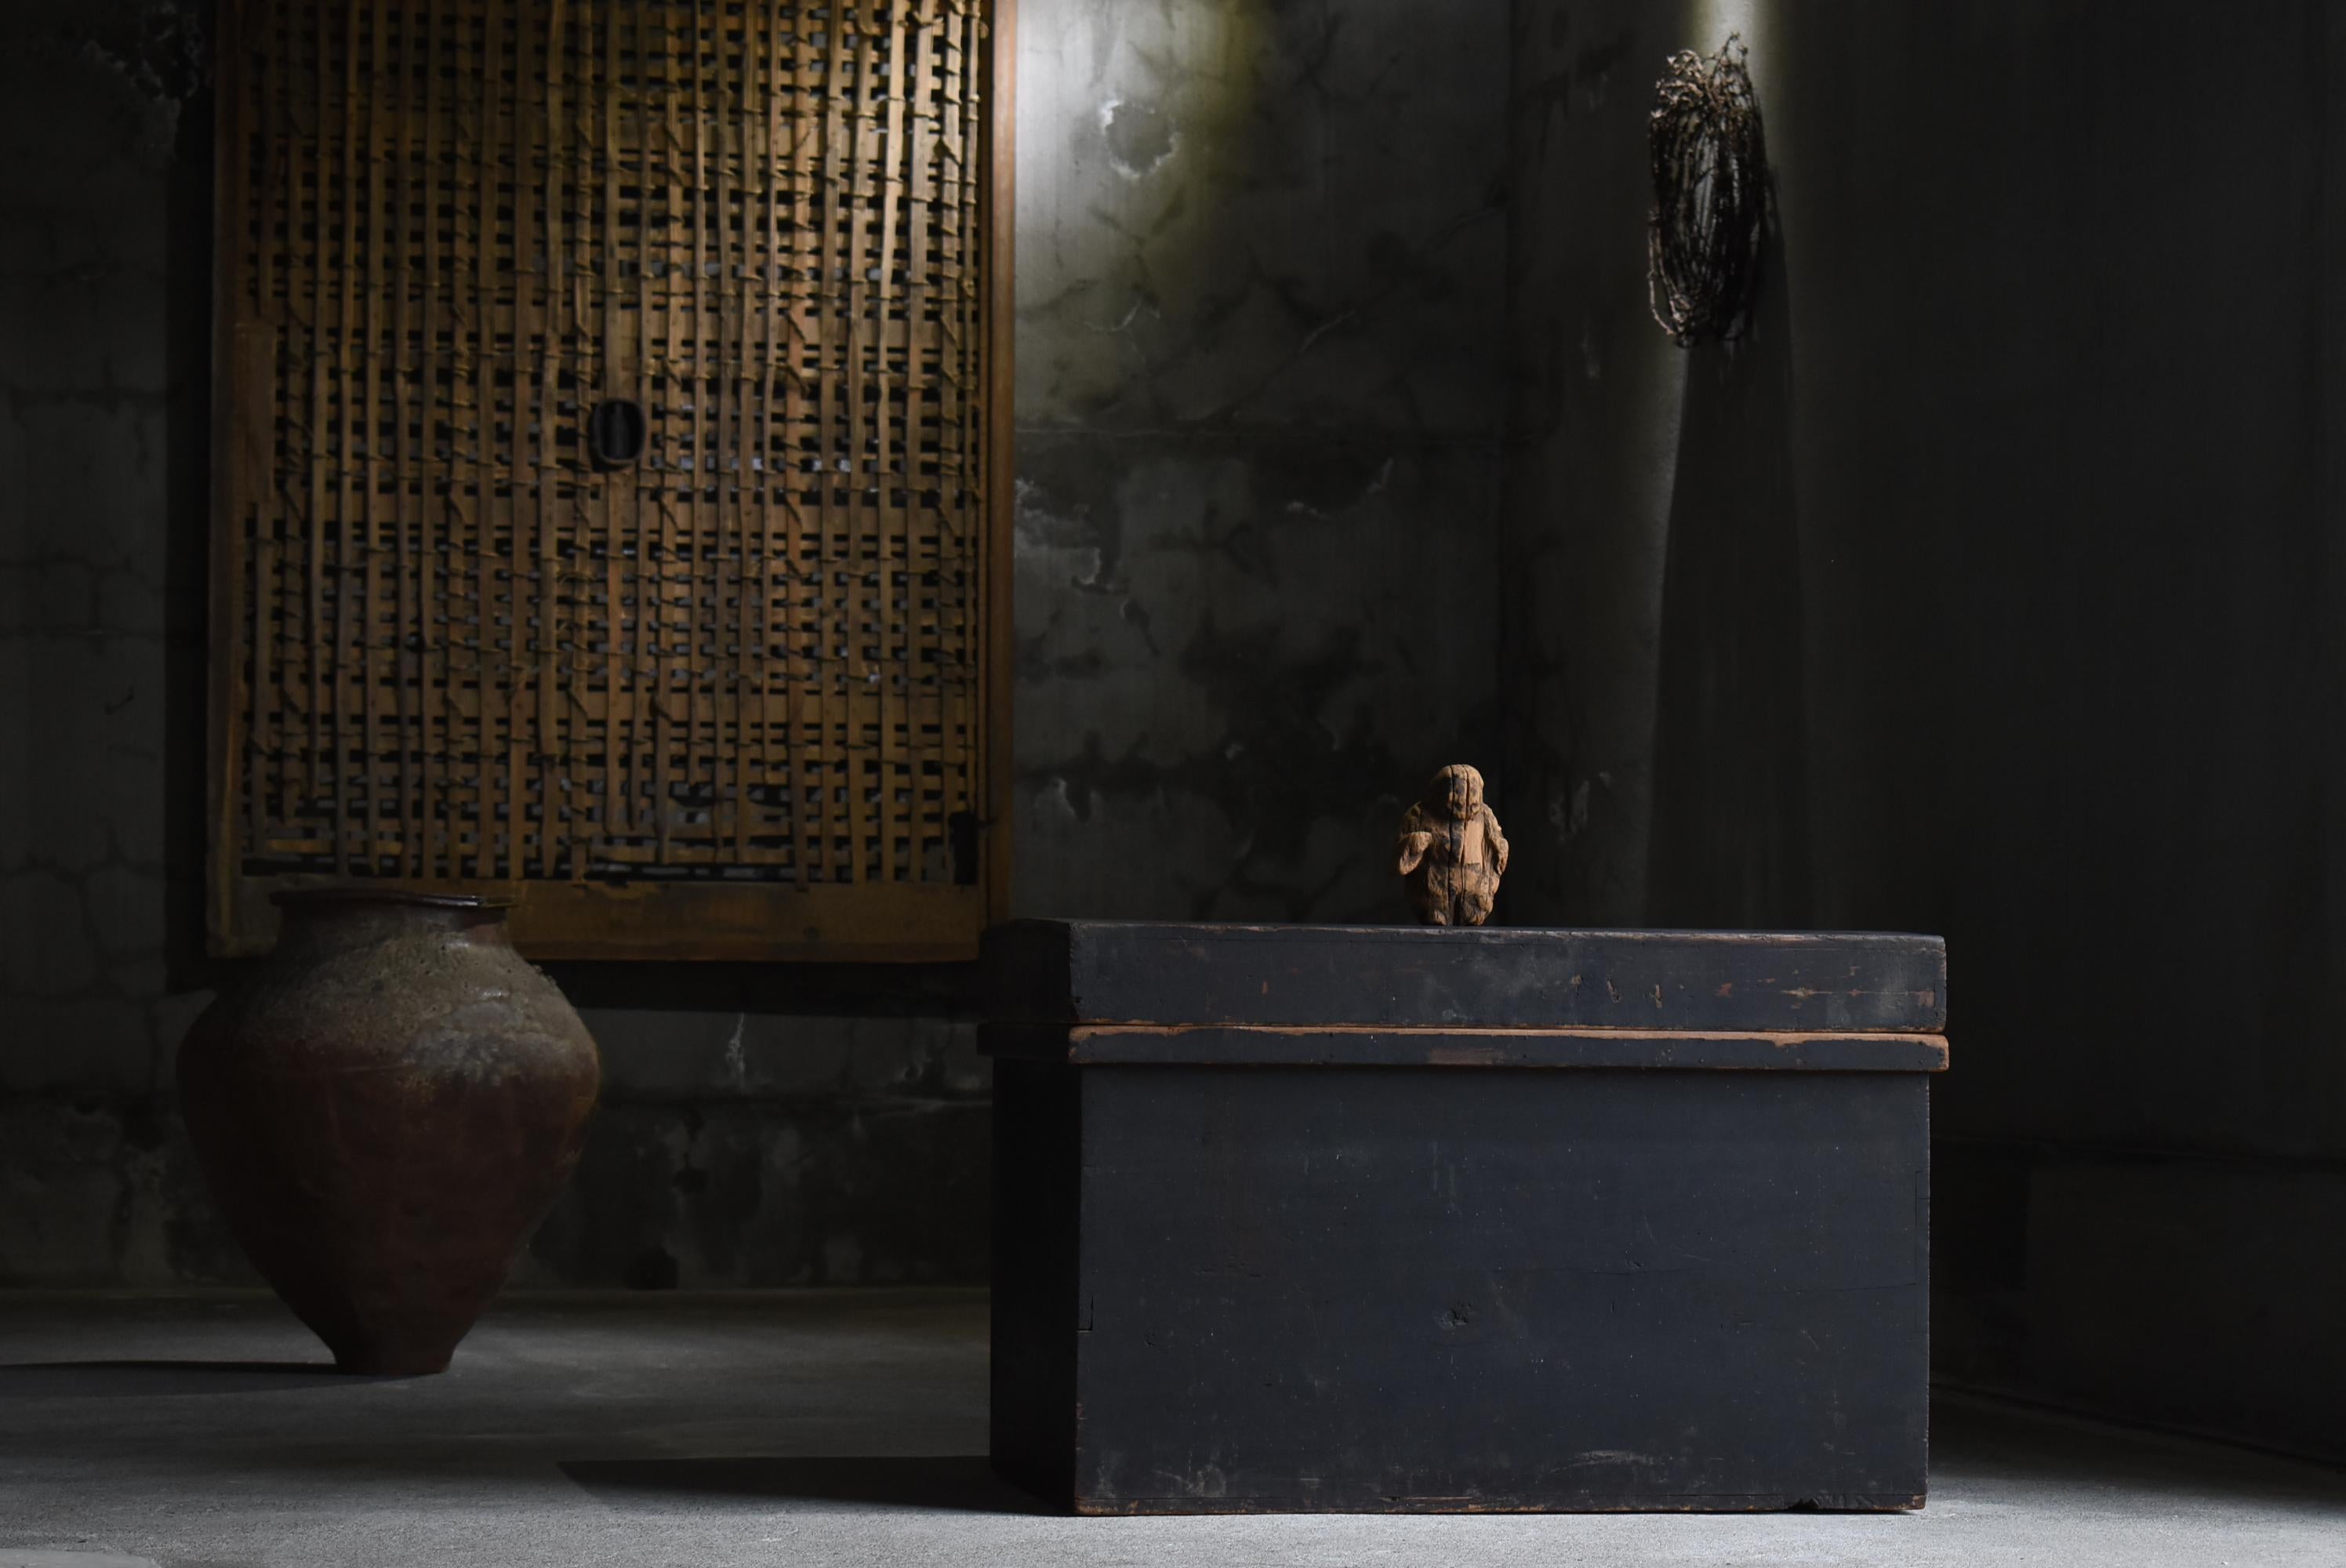 Sehr alte japanische Aufbewahrungsbox.
Diese Schachtel stammt aus der Meiji-Ära. (1860er-1900er Jahre).
MATERIAL ist Zedernholz.

Keine unnötige Dekoration, einfach und schön.
Ultimative Einfachheit.
Die geschmackvolle, schlichte schwarze Farbe ist